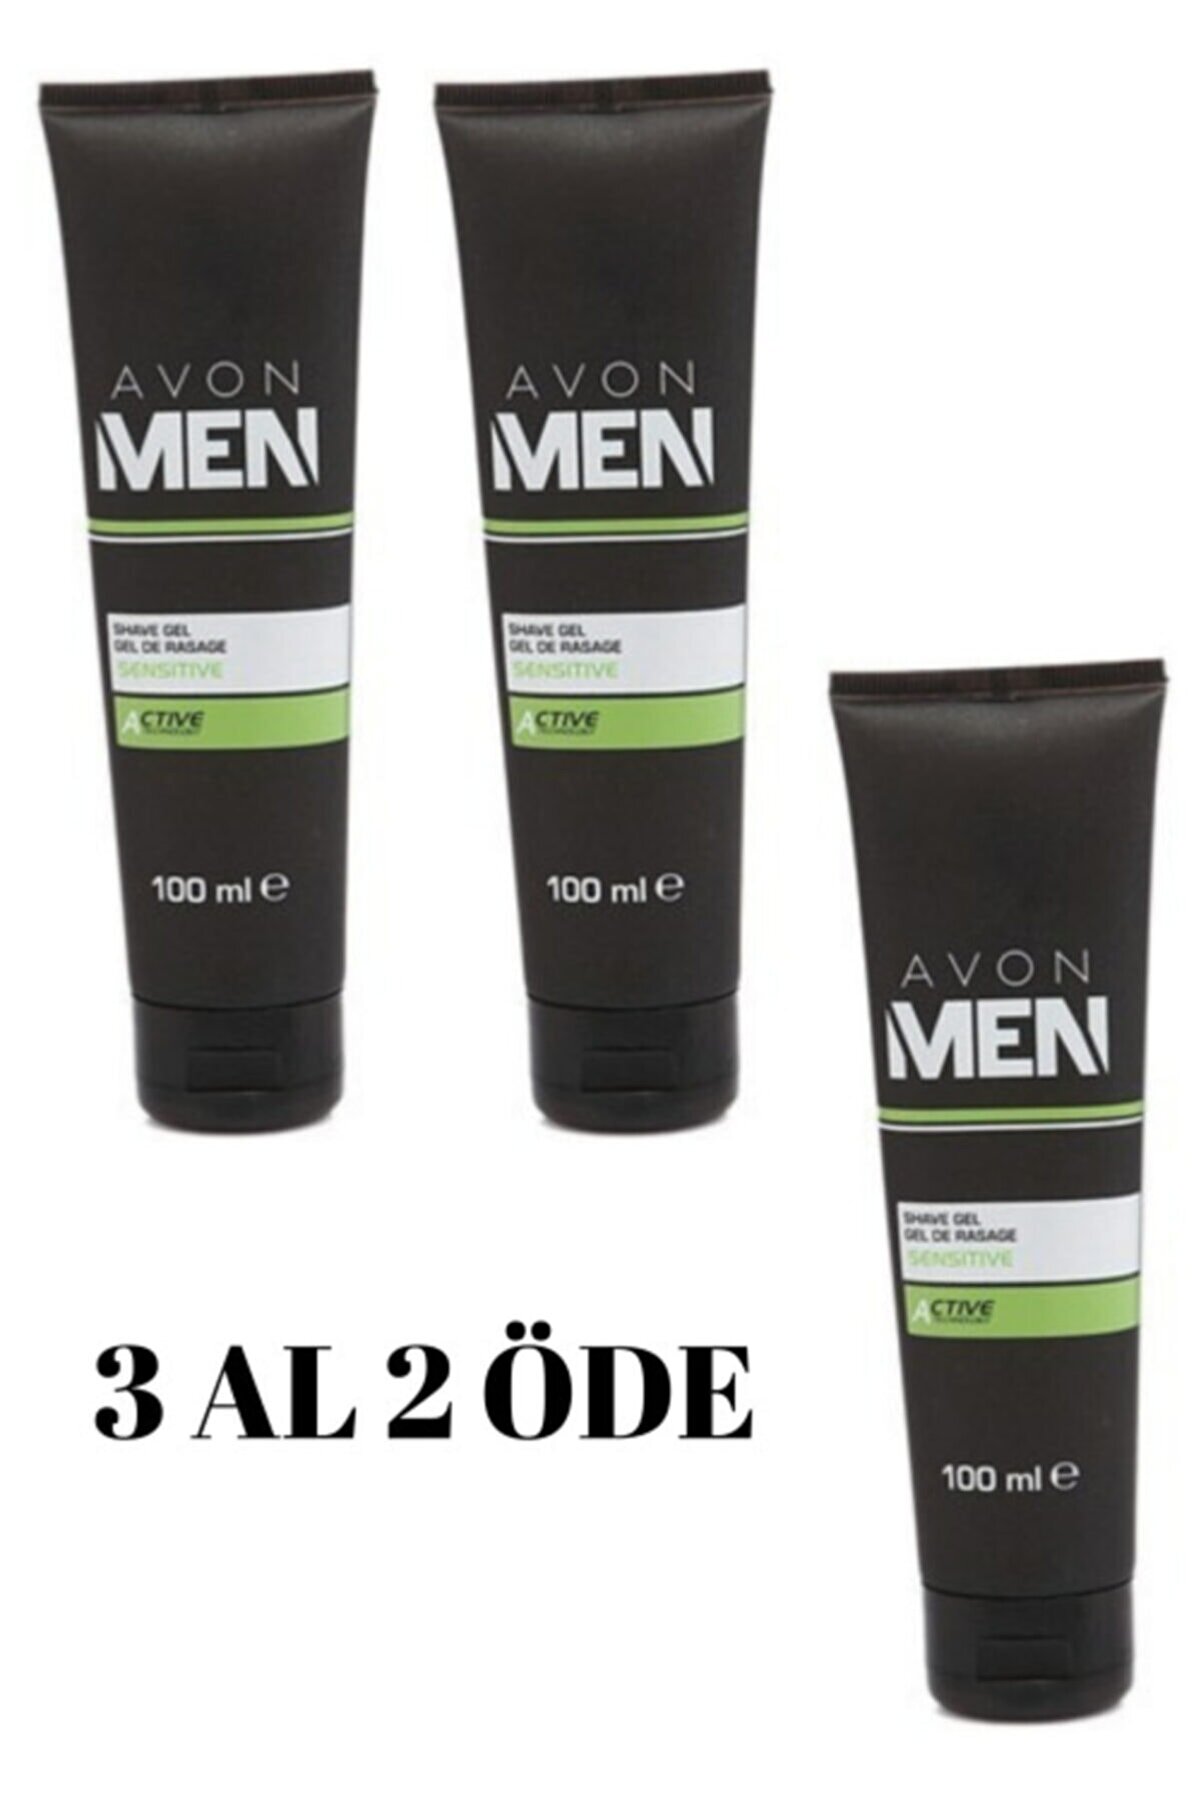 Avon Men Tıraş Öncesi Uygulanan Jel 100 Ml (3 Al 2 Öde)